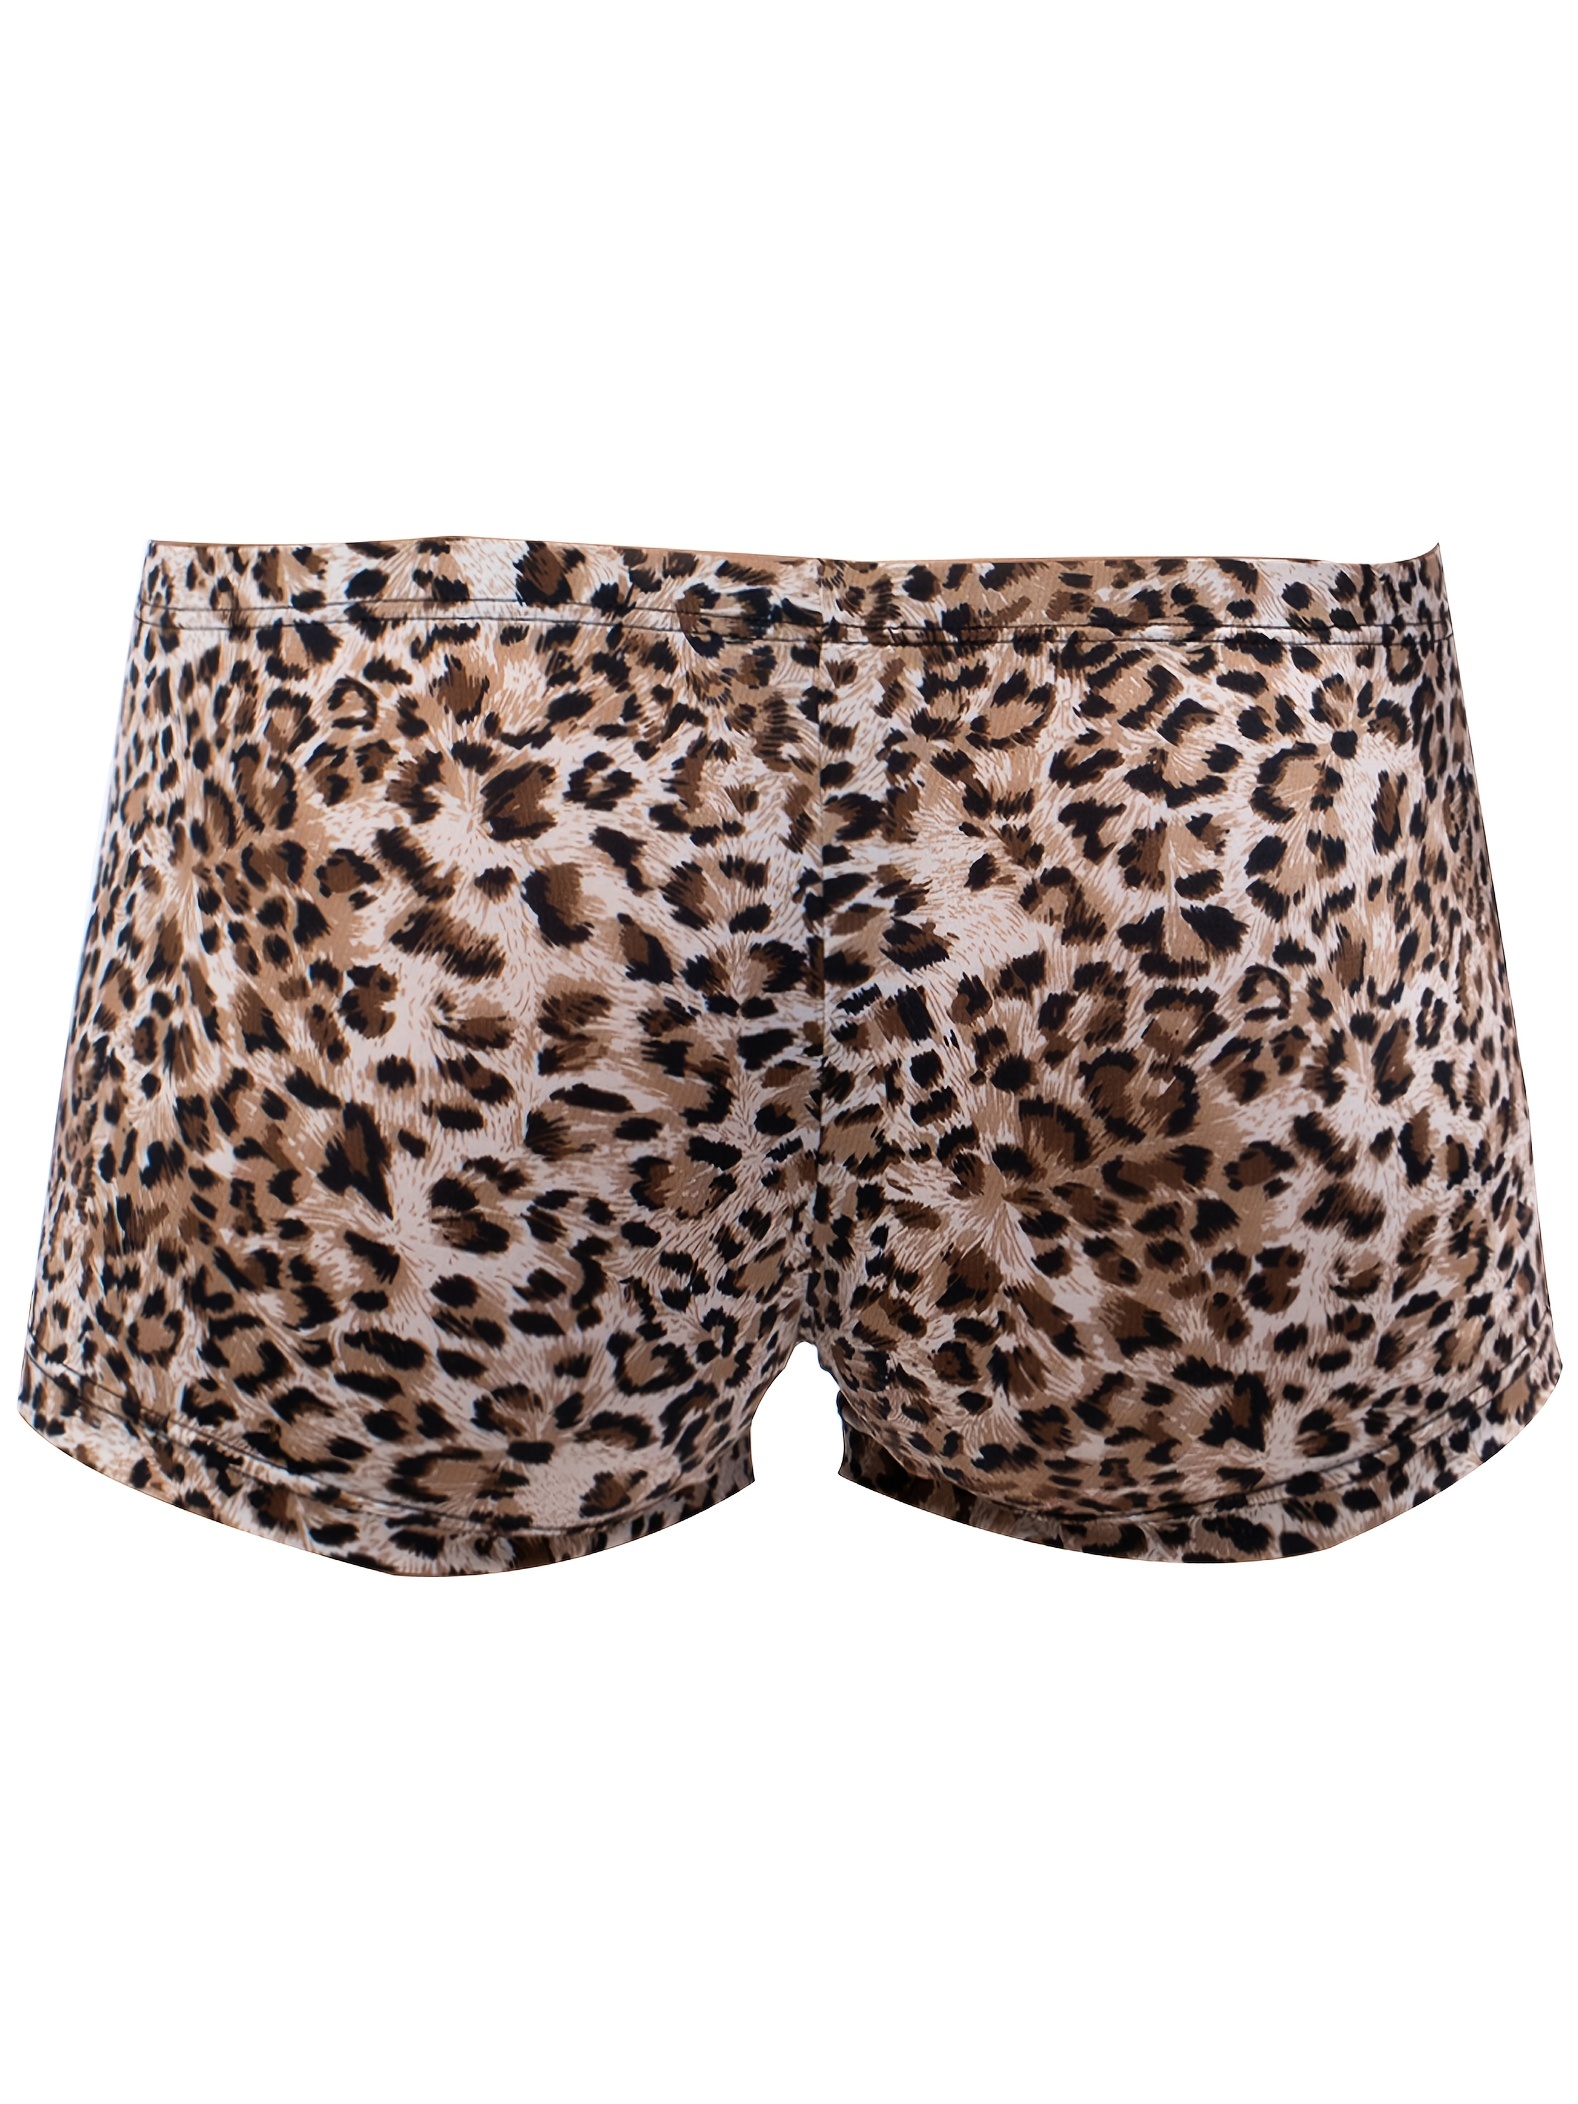 leopard-print boxers